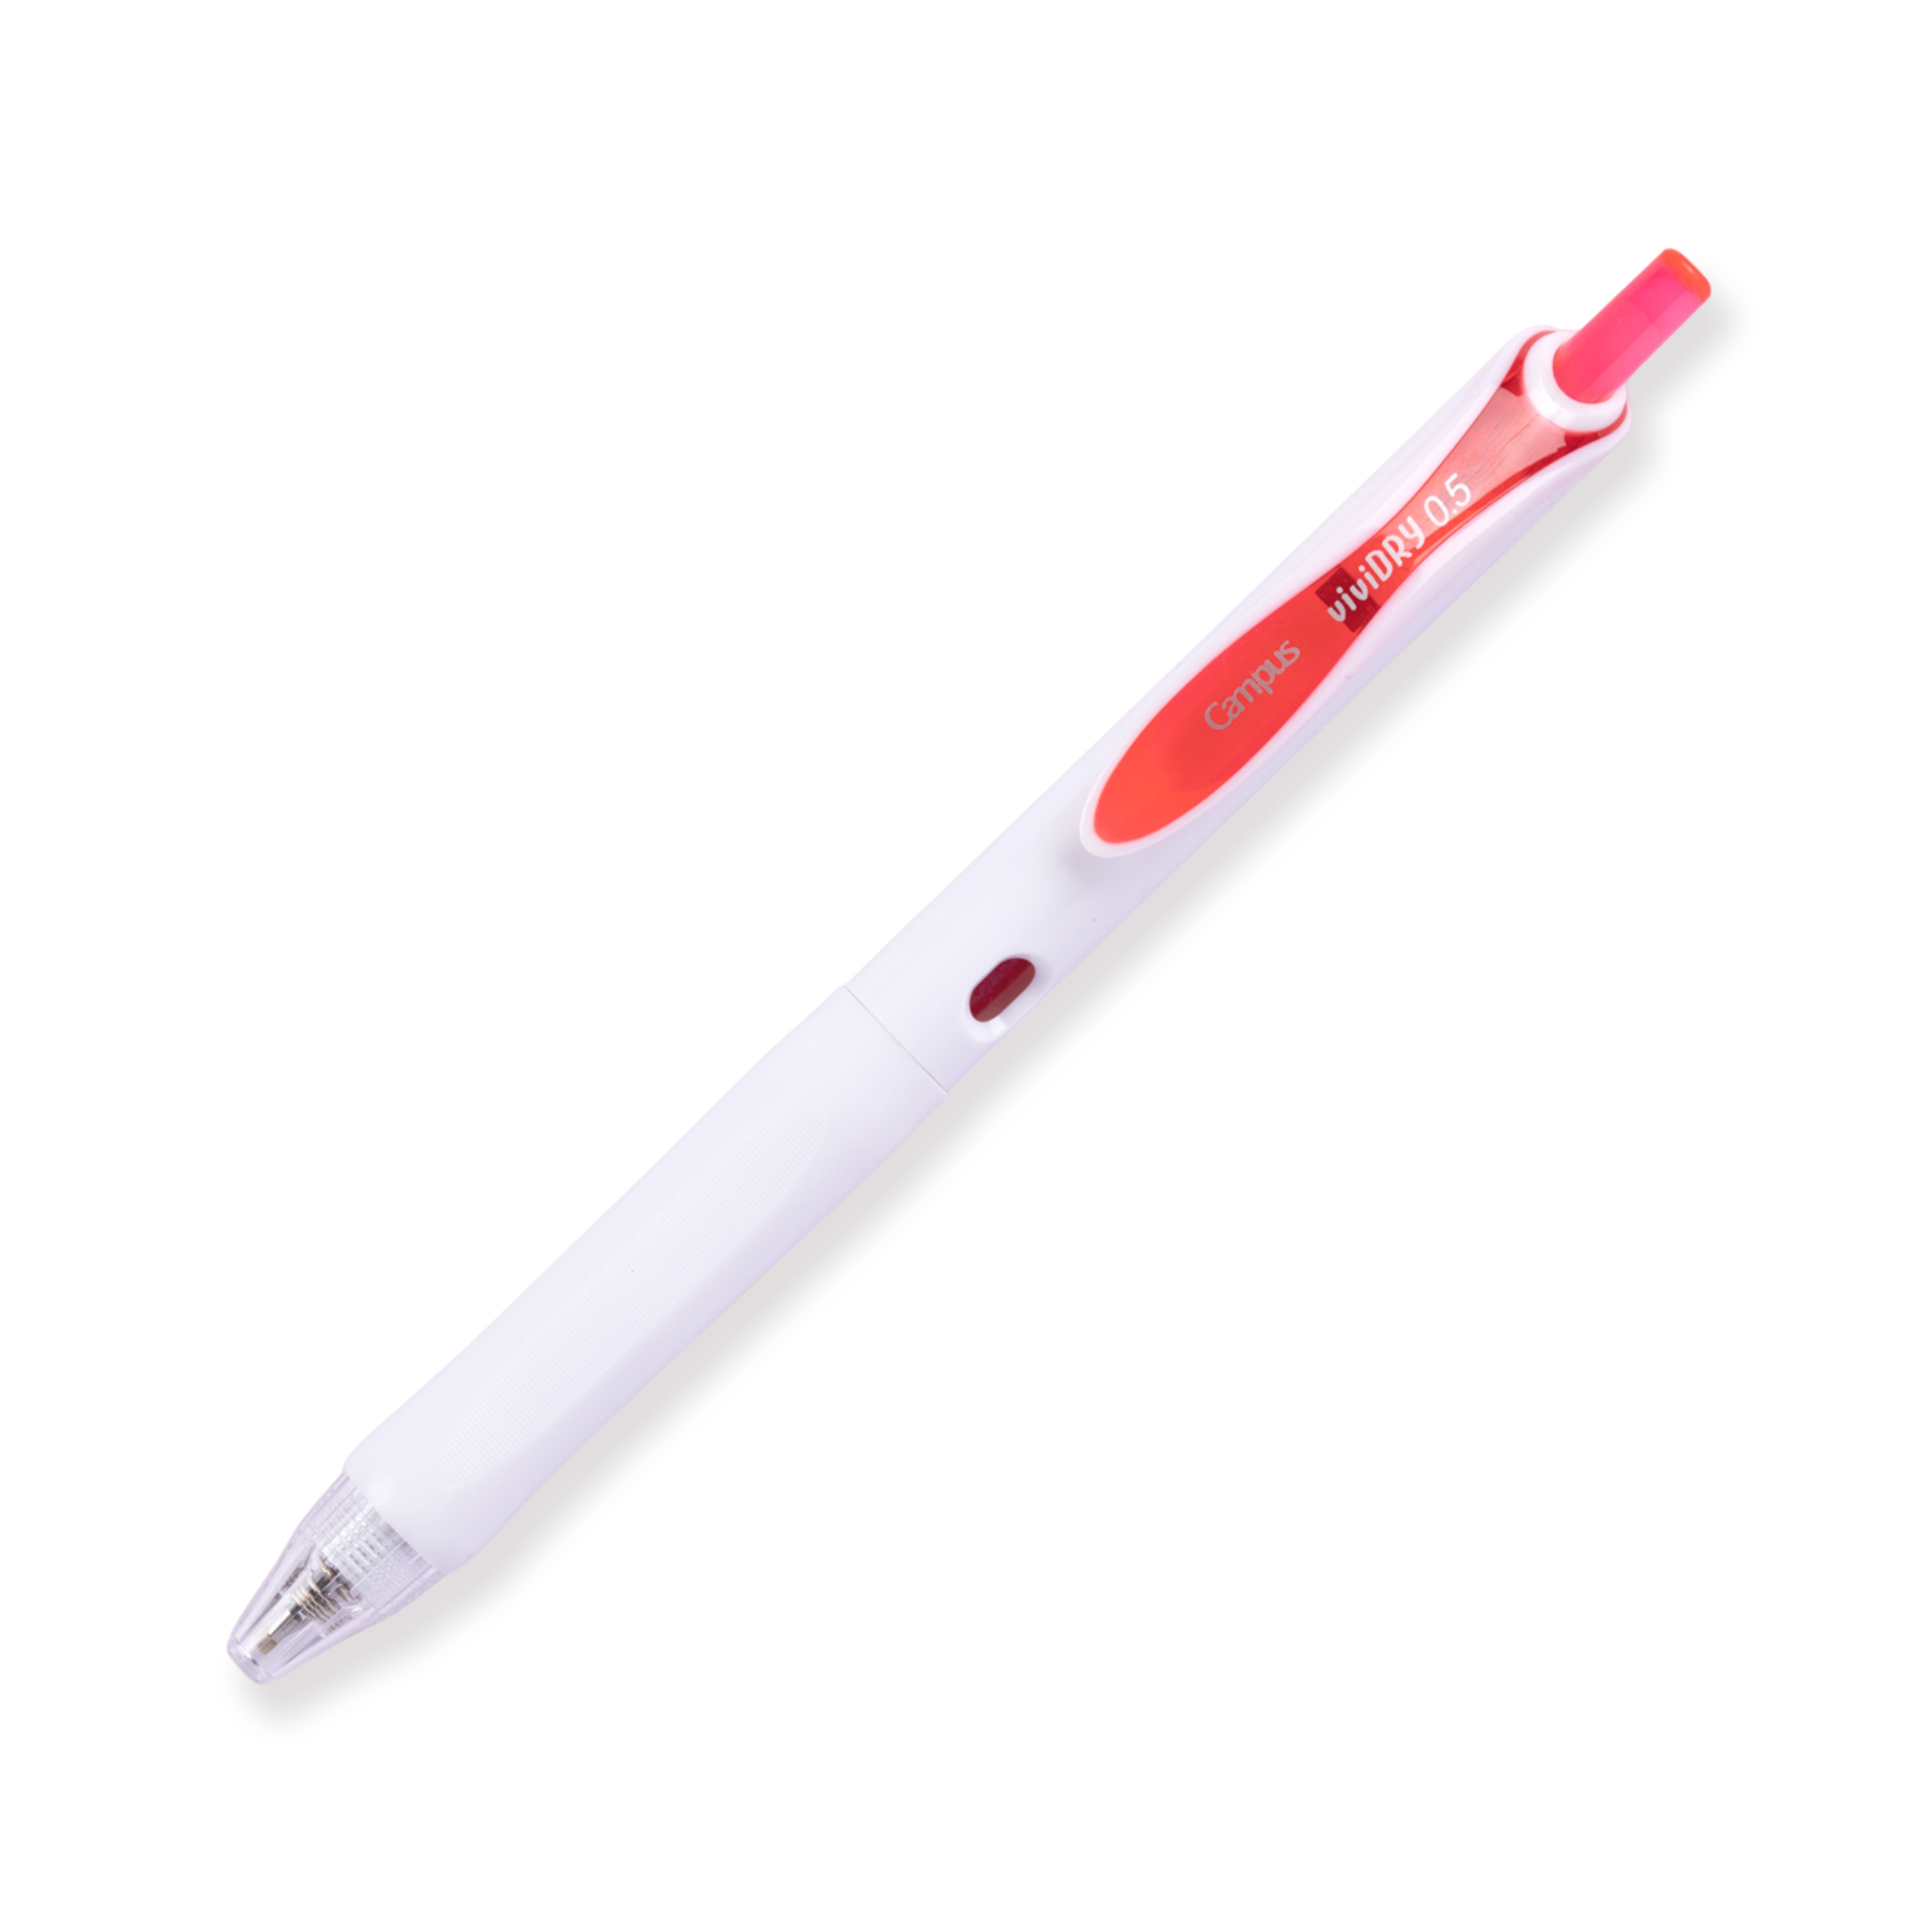 Kokuyo Campus viviDRY Retractable Gel Pen - 0.5 mm - Red